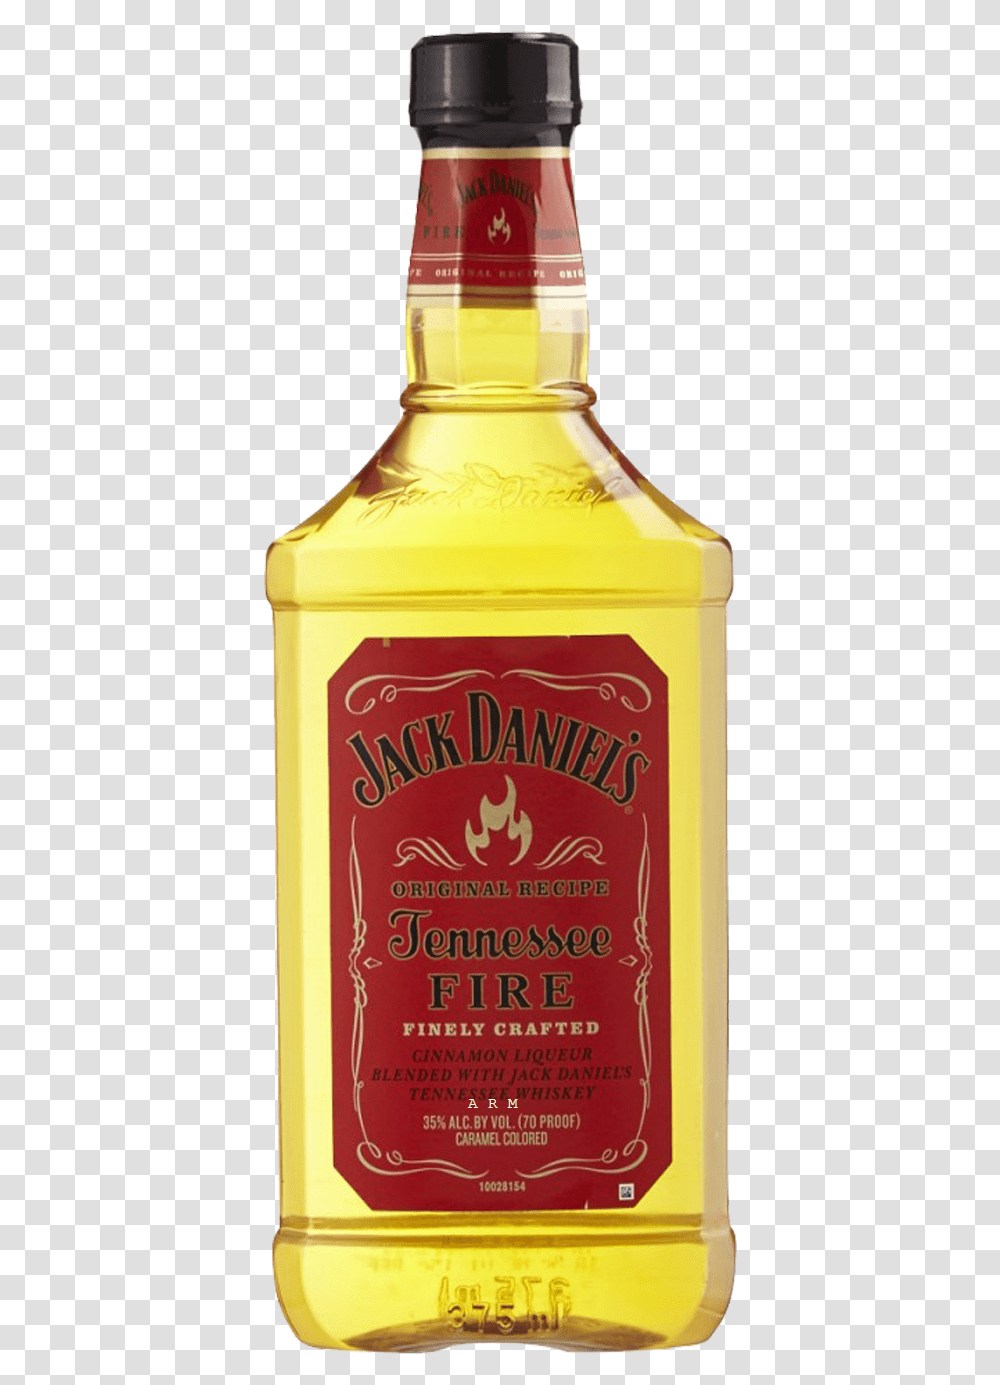 Jack Daniels Bottle, Label, Liquor, Alcohol Transparent Png